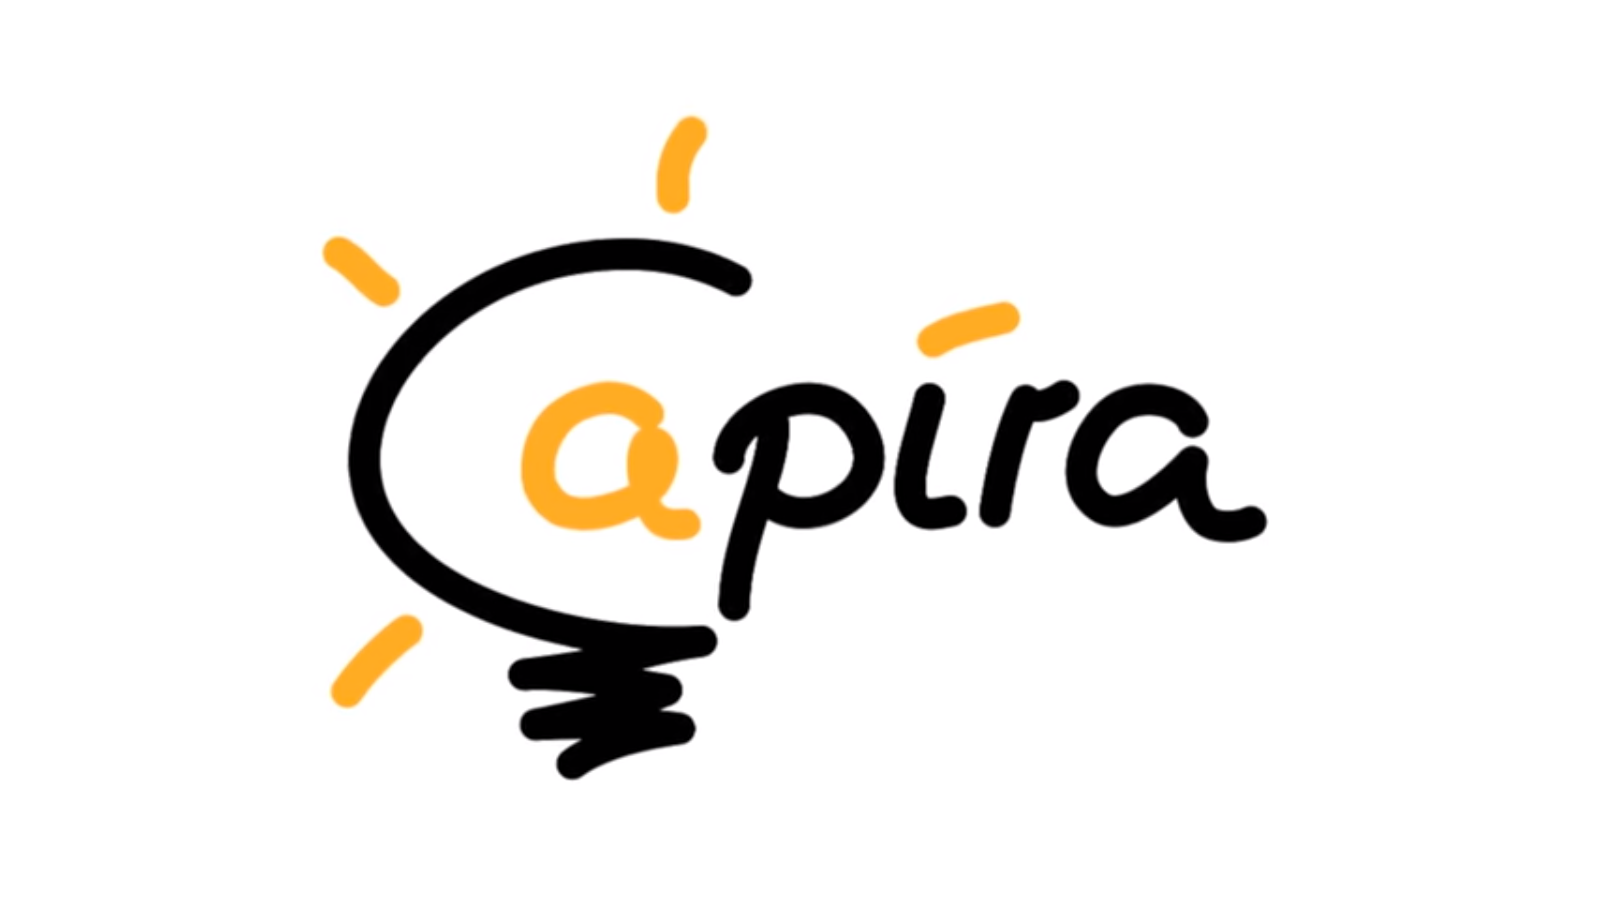 Mit “Capira” Lernvideos auch kapieren